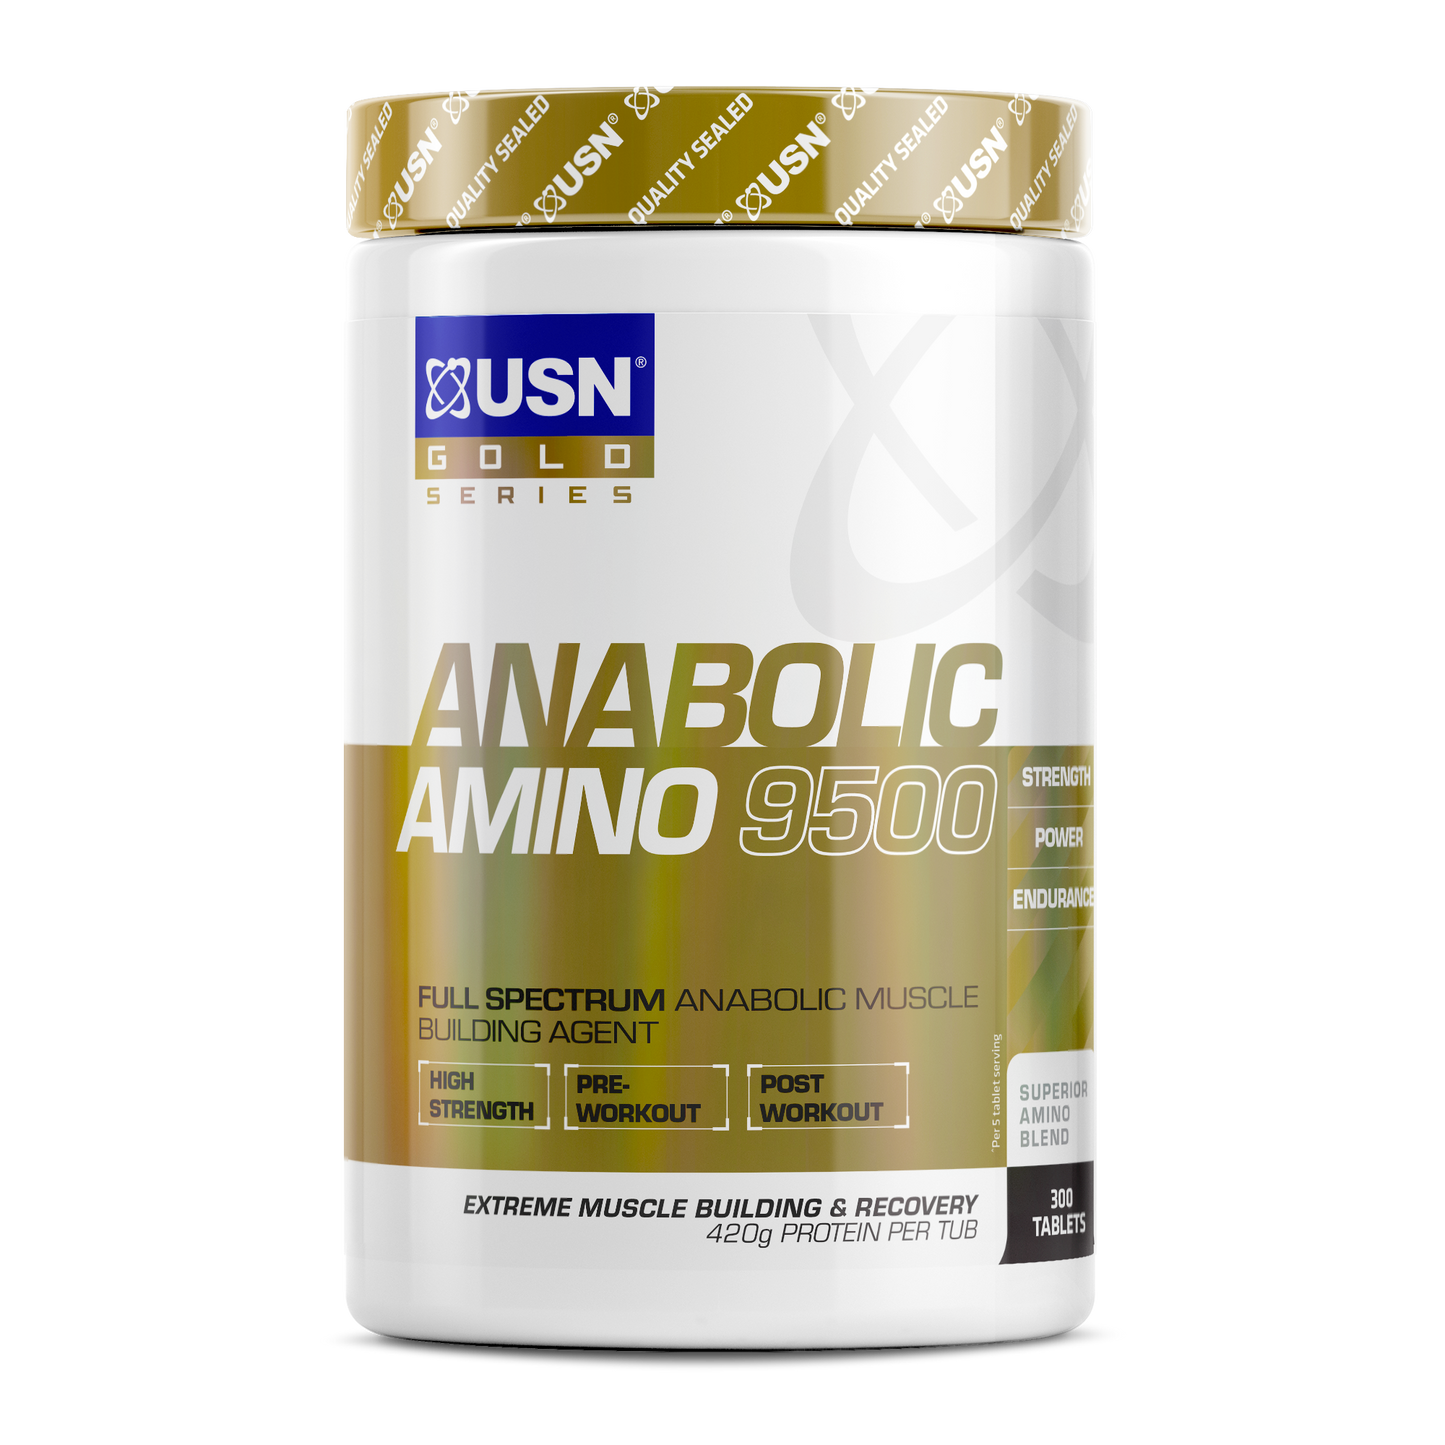 Anabolic Amino 9500